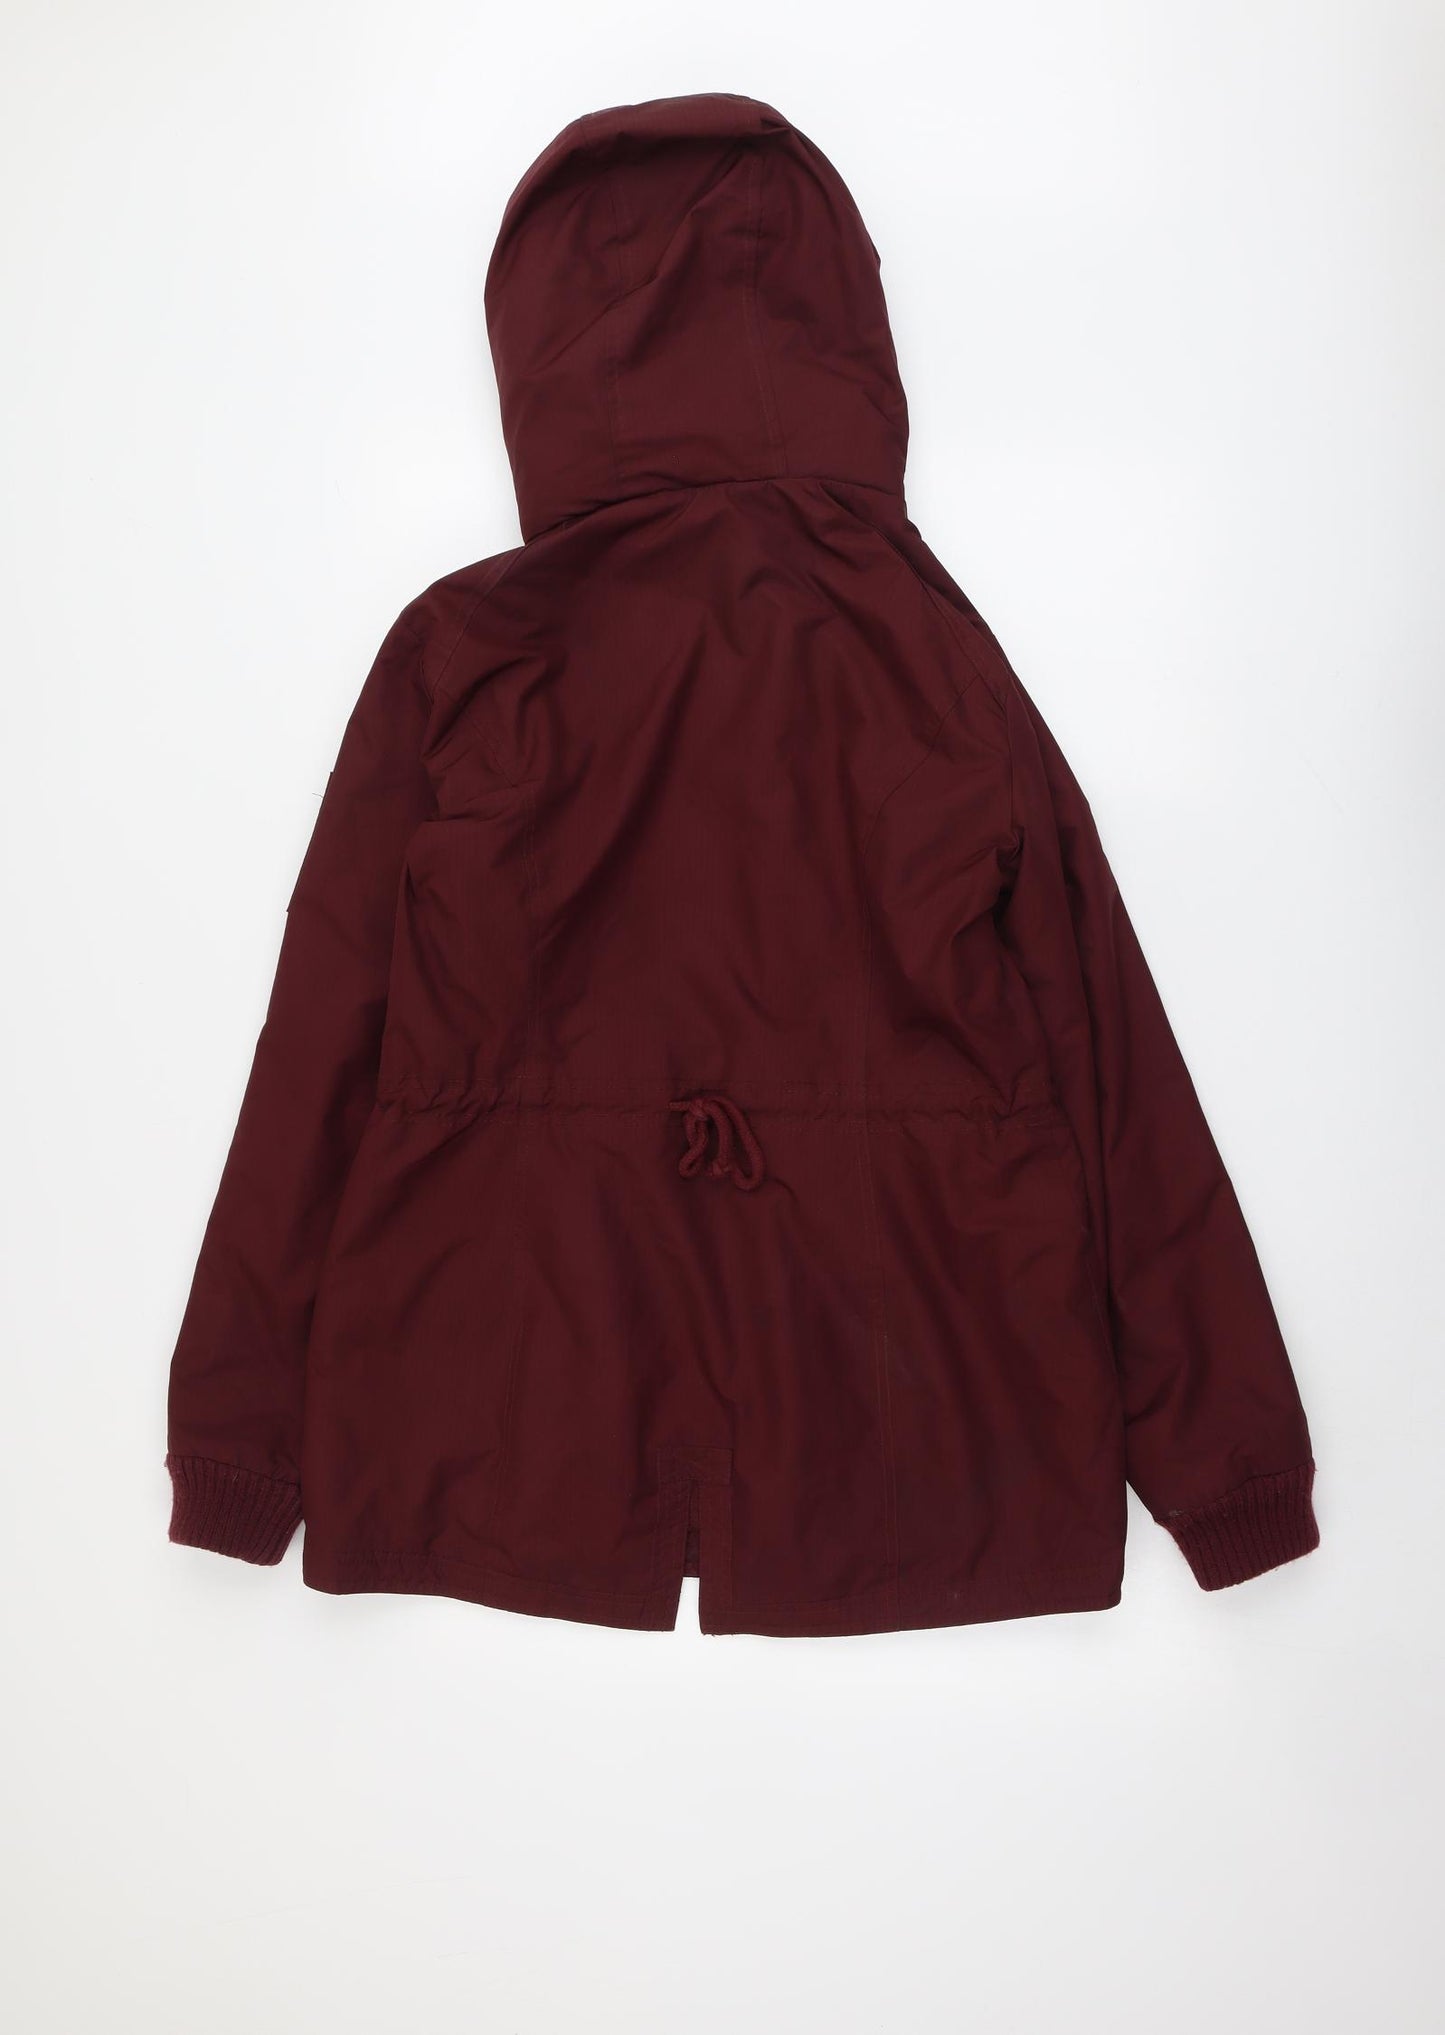 Hollister Womens Red Windbreaker Jacket Size L Zip